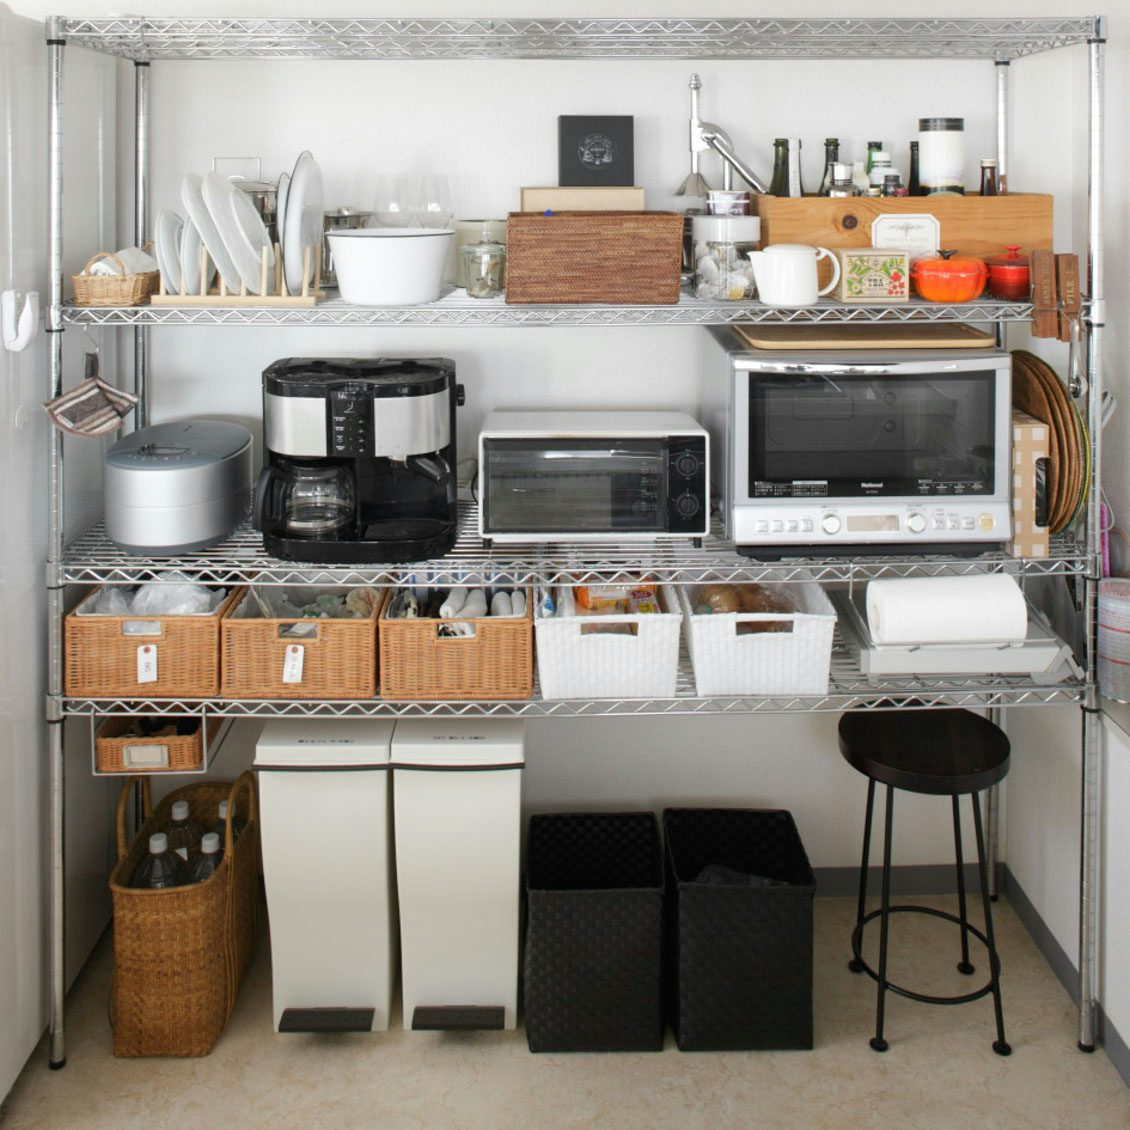 スチールラックがキッチンでは便利 食器棚など収納アイデア例 北欧 暮らしの道具店